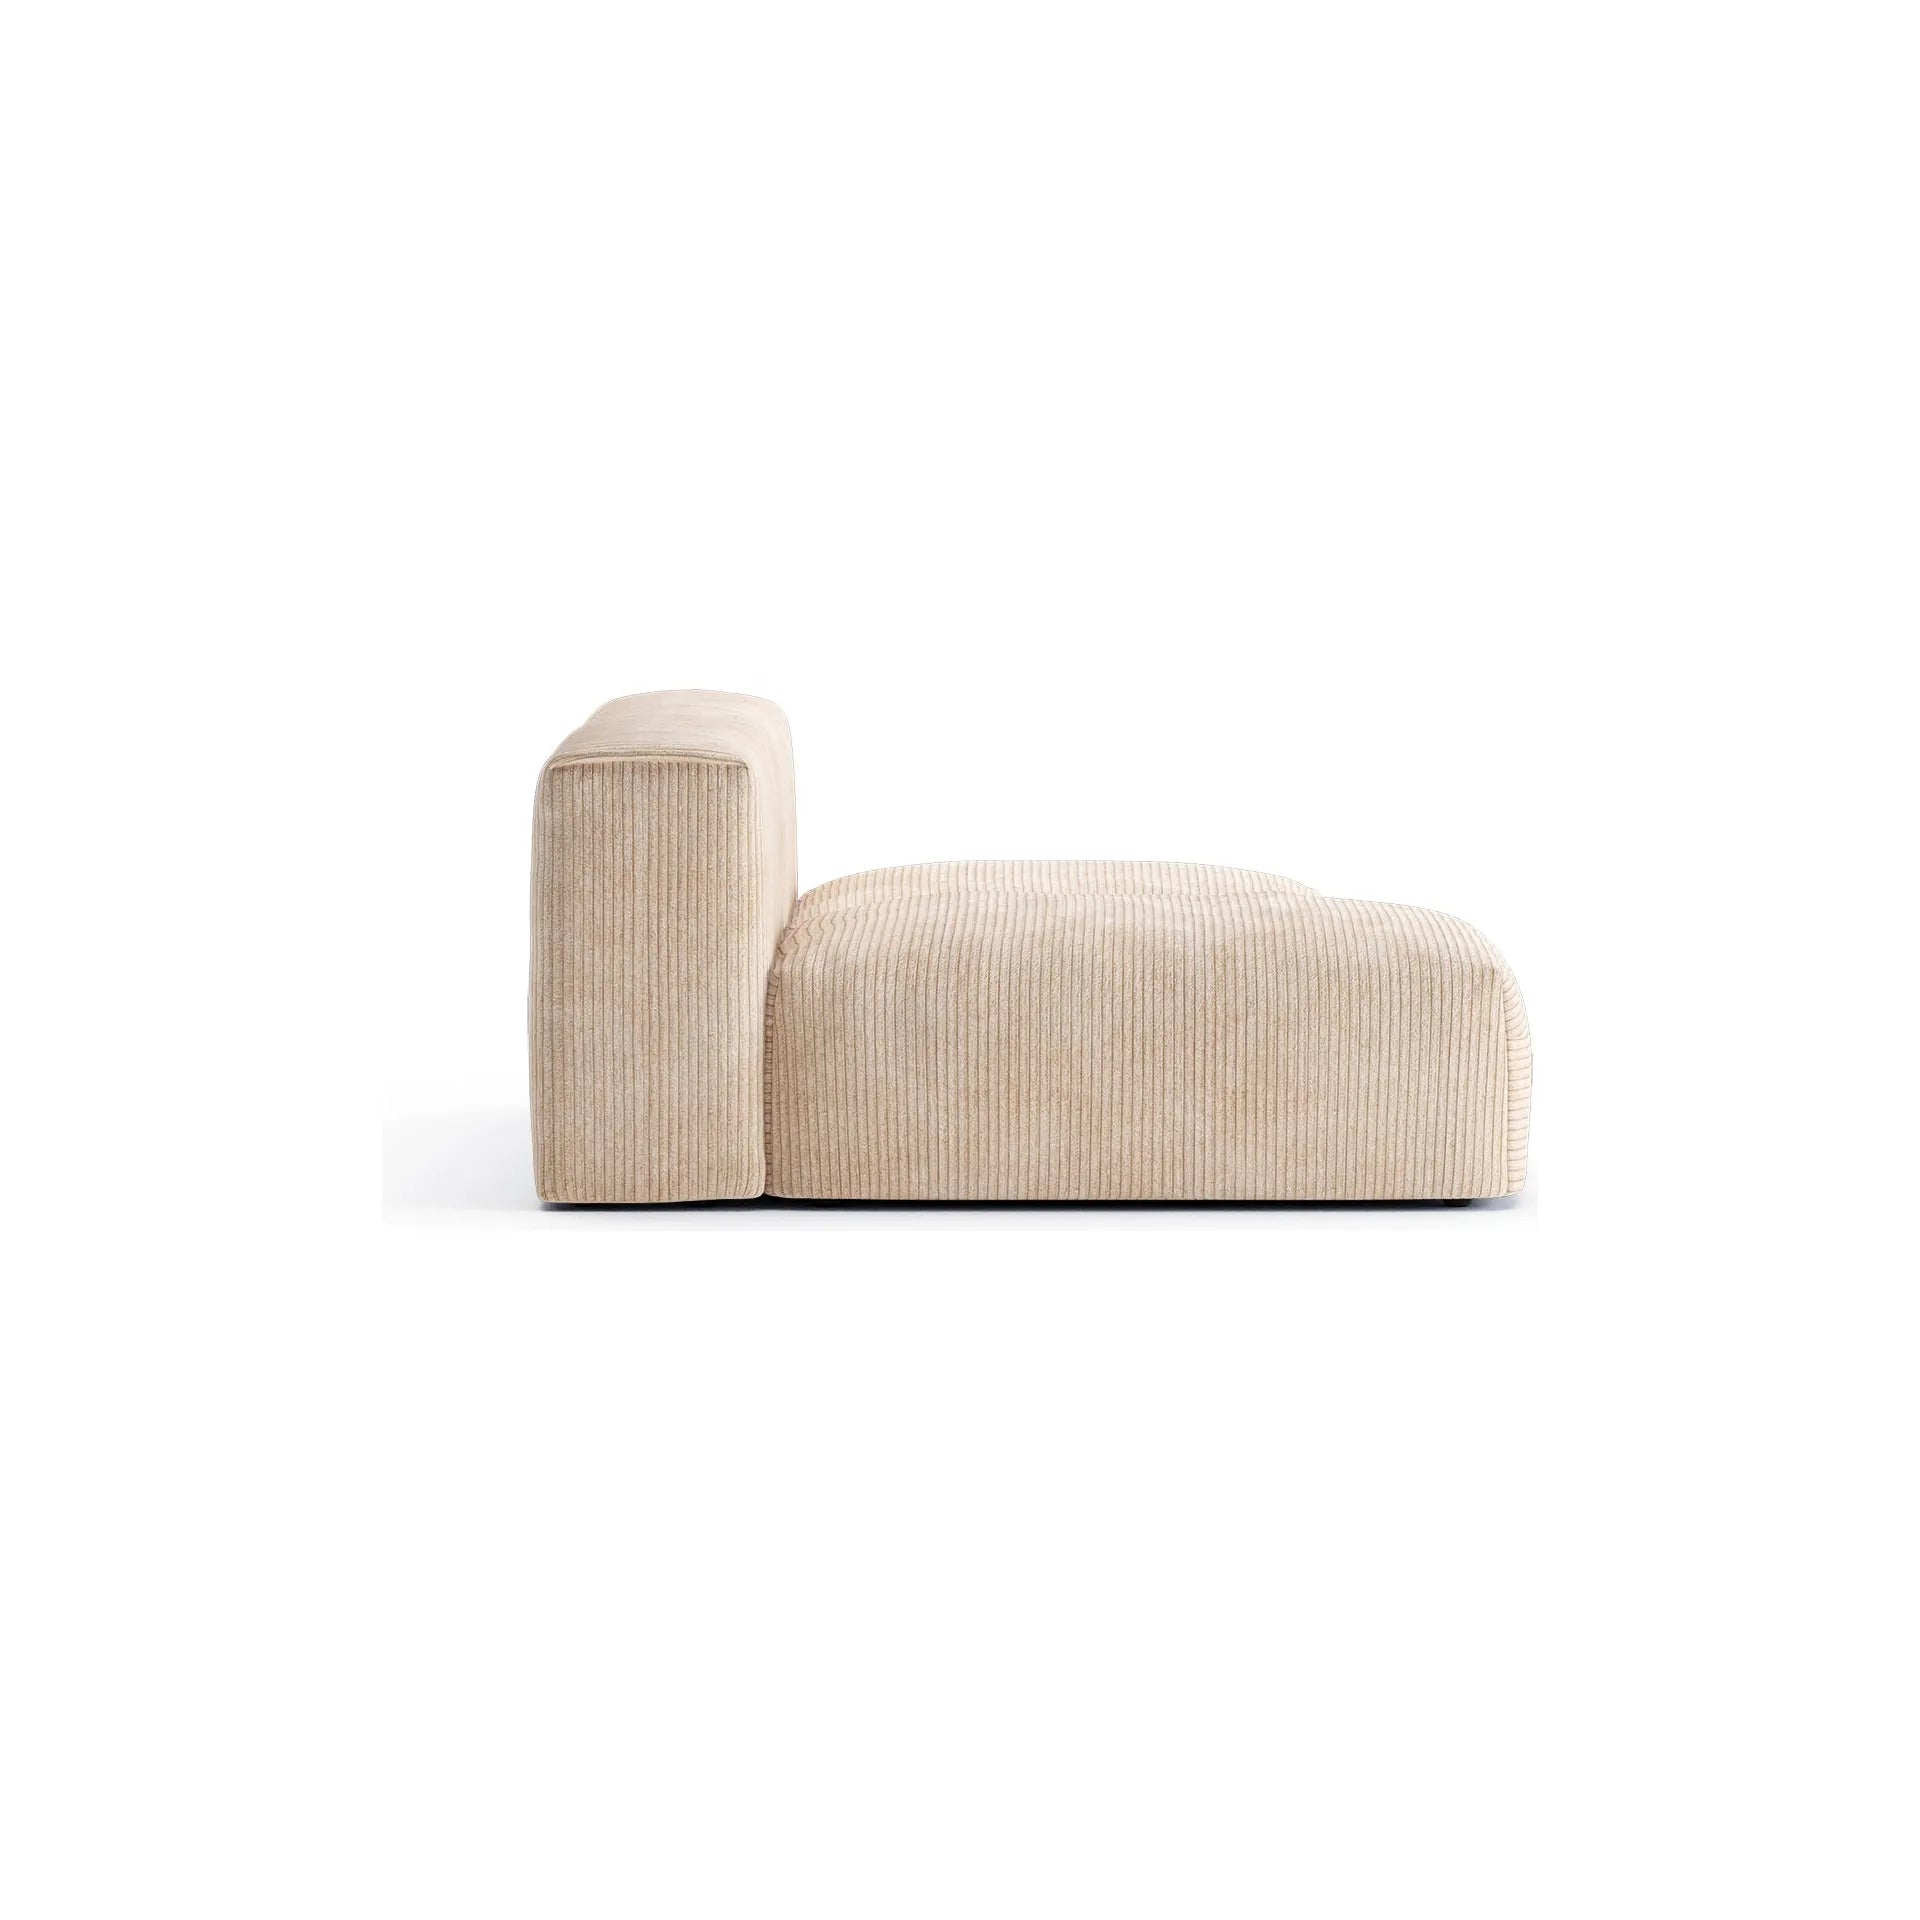 CLOUD M, 3 vietų modulinė sofa, smėlio spalva, velvetas